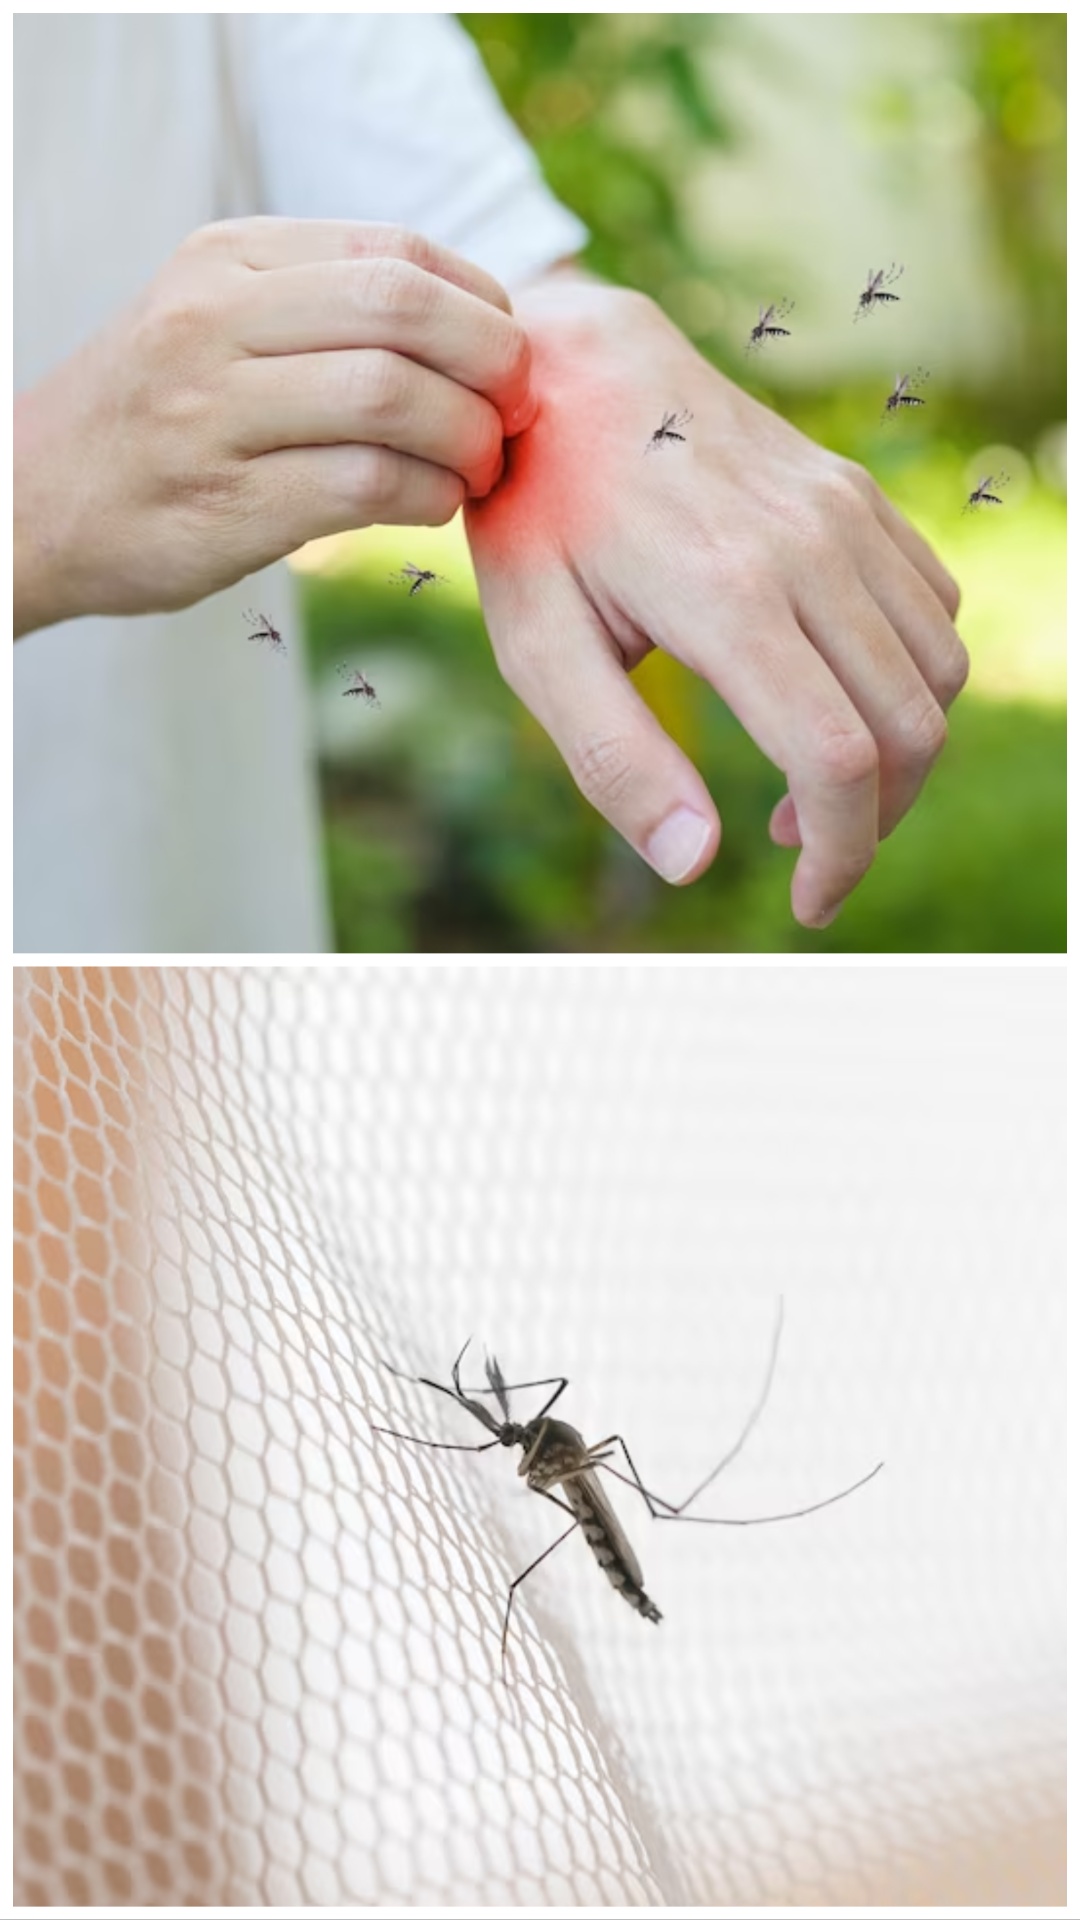 डेंगू और मलेरिया से बचने के लिए तुरंत करें ये 8 काम